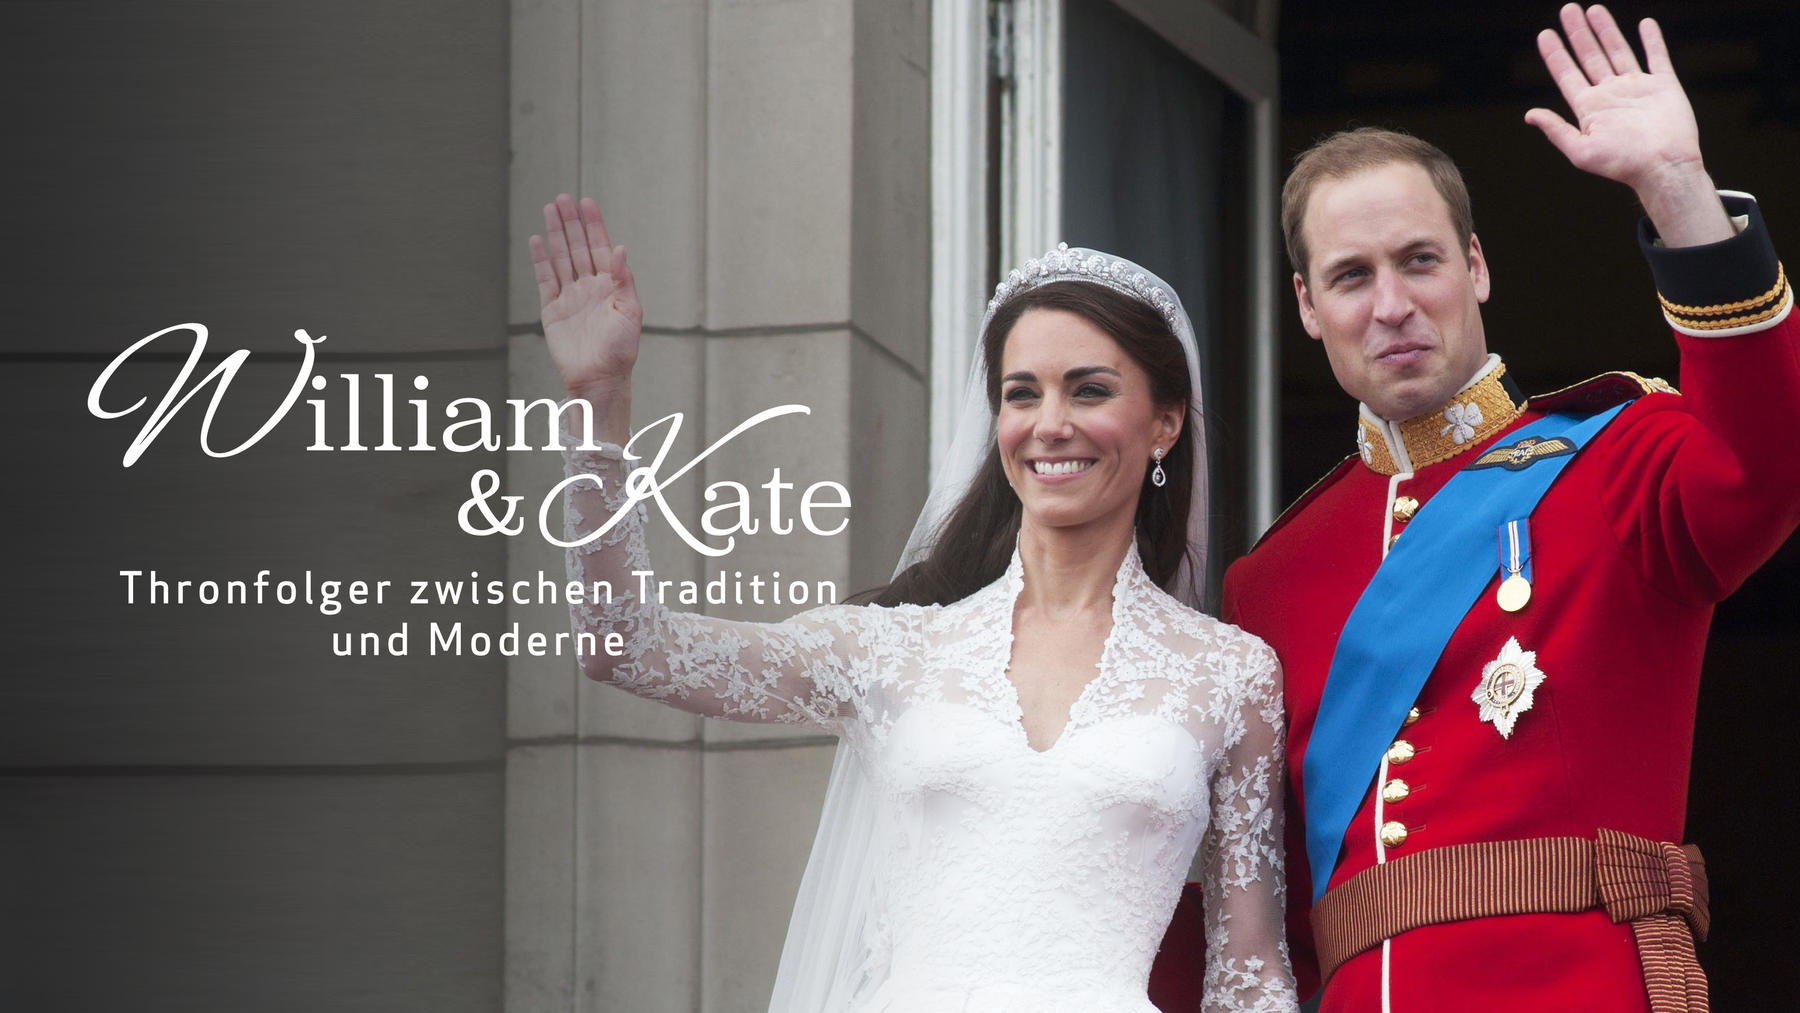 William & Kate: Thronfolger zwischen Tradition und Moderne